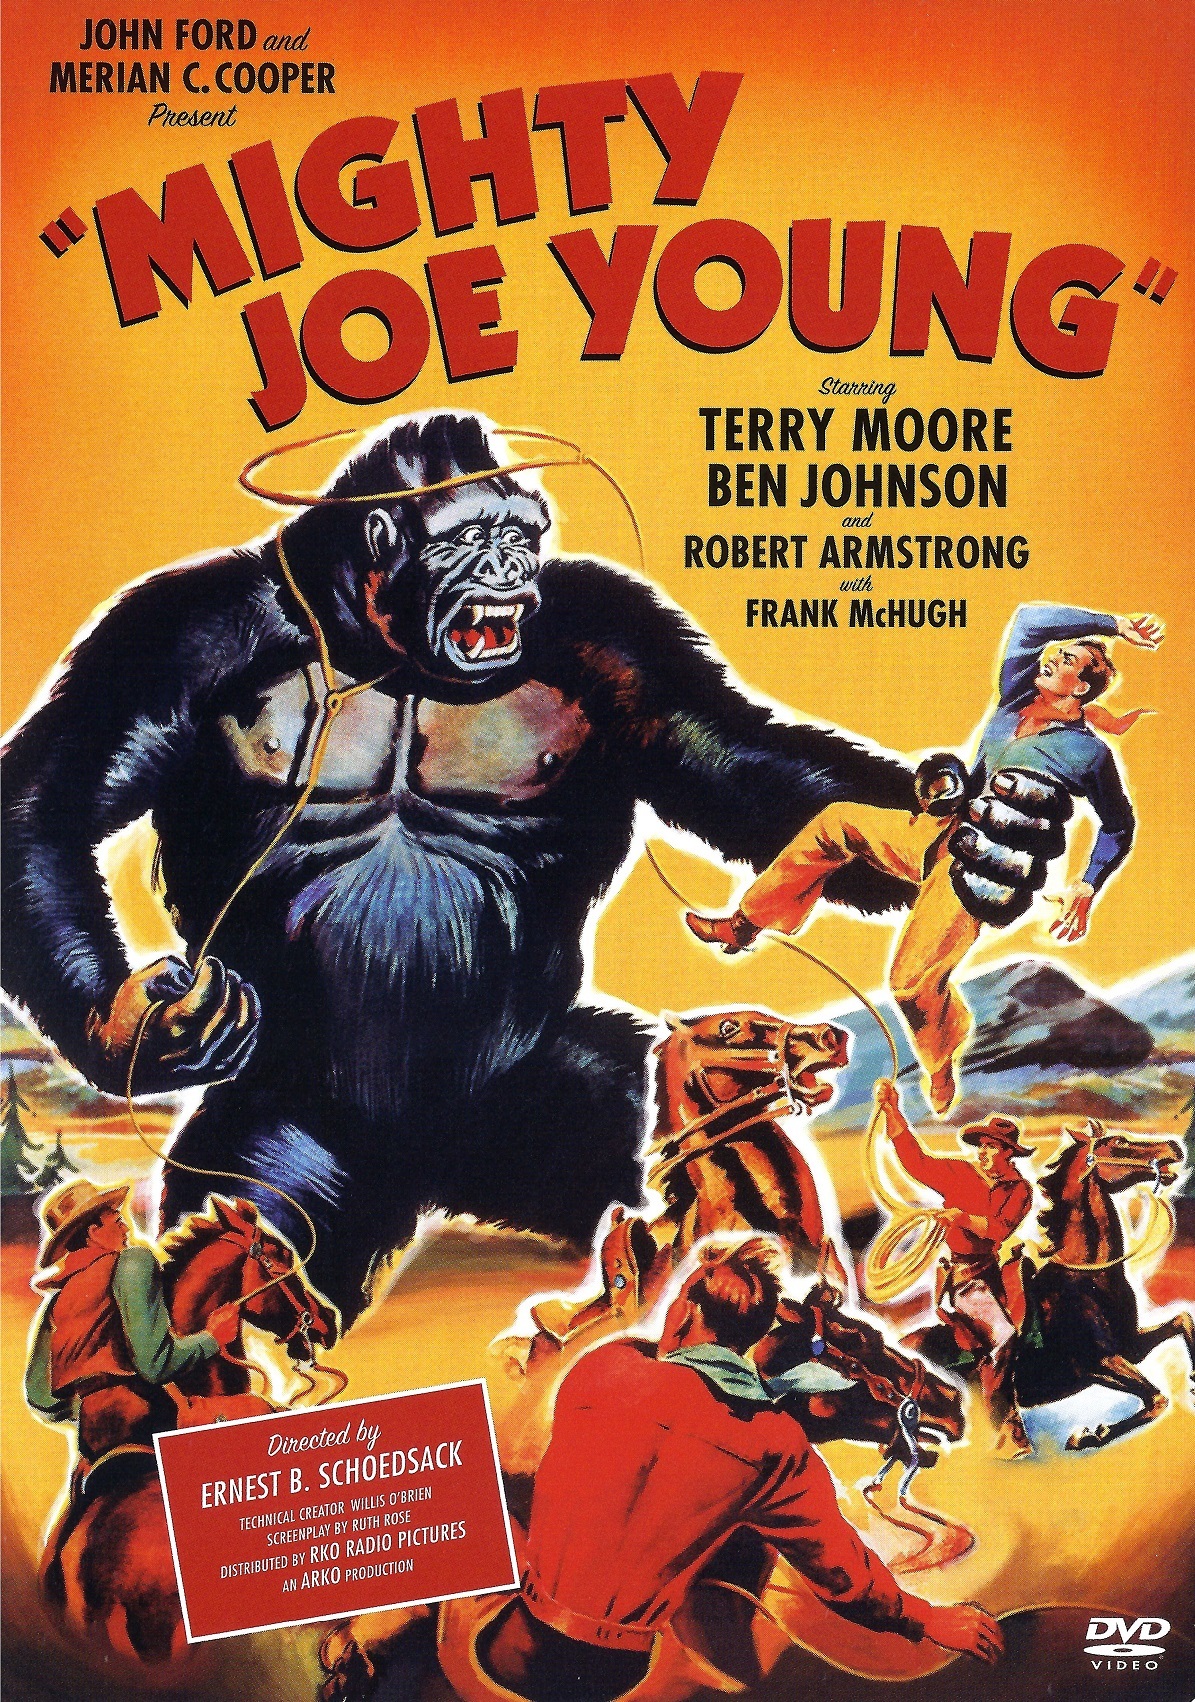 King Kong: 7-Movie Collection (1933-2017) Colección de 7 Películas de King Kong (1933-2017) [DTS AC3 5.1/2.0/1.0 + SUP/SRT/SUB + IDX] [Blu Ray-Rip] [DVD-RIP] 19754_front